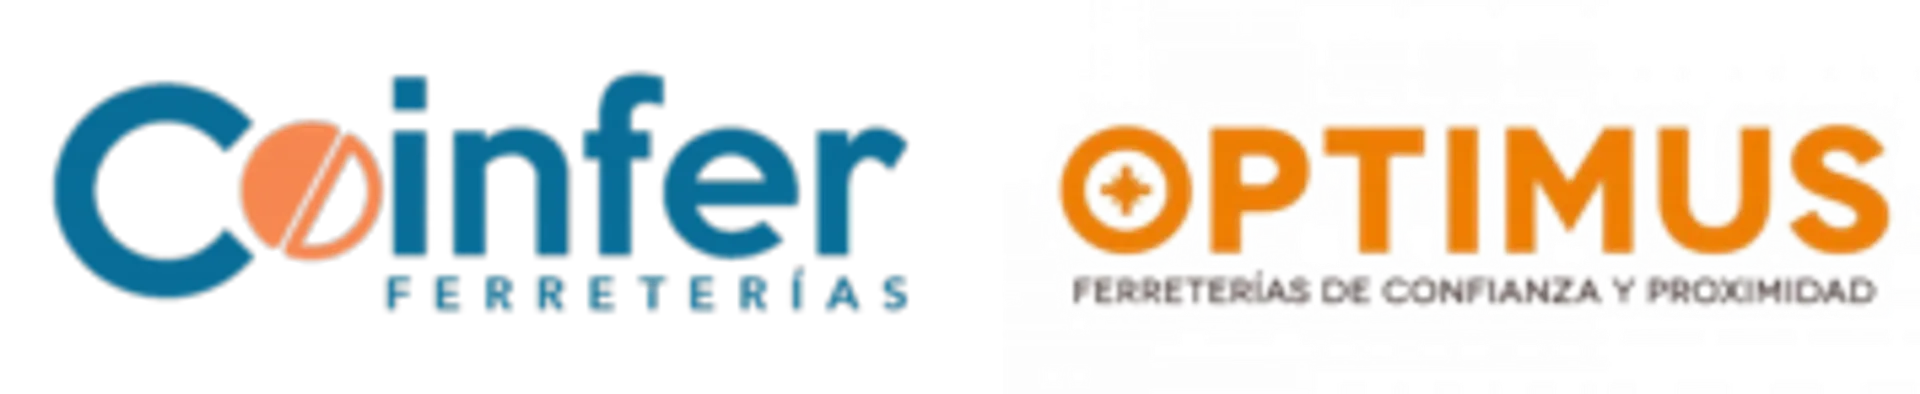 COINFER logo